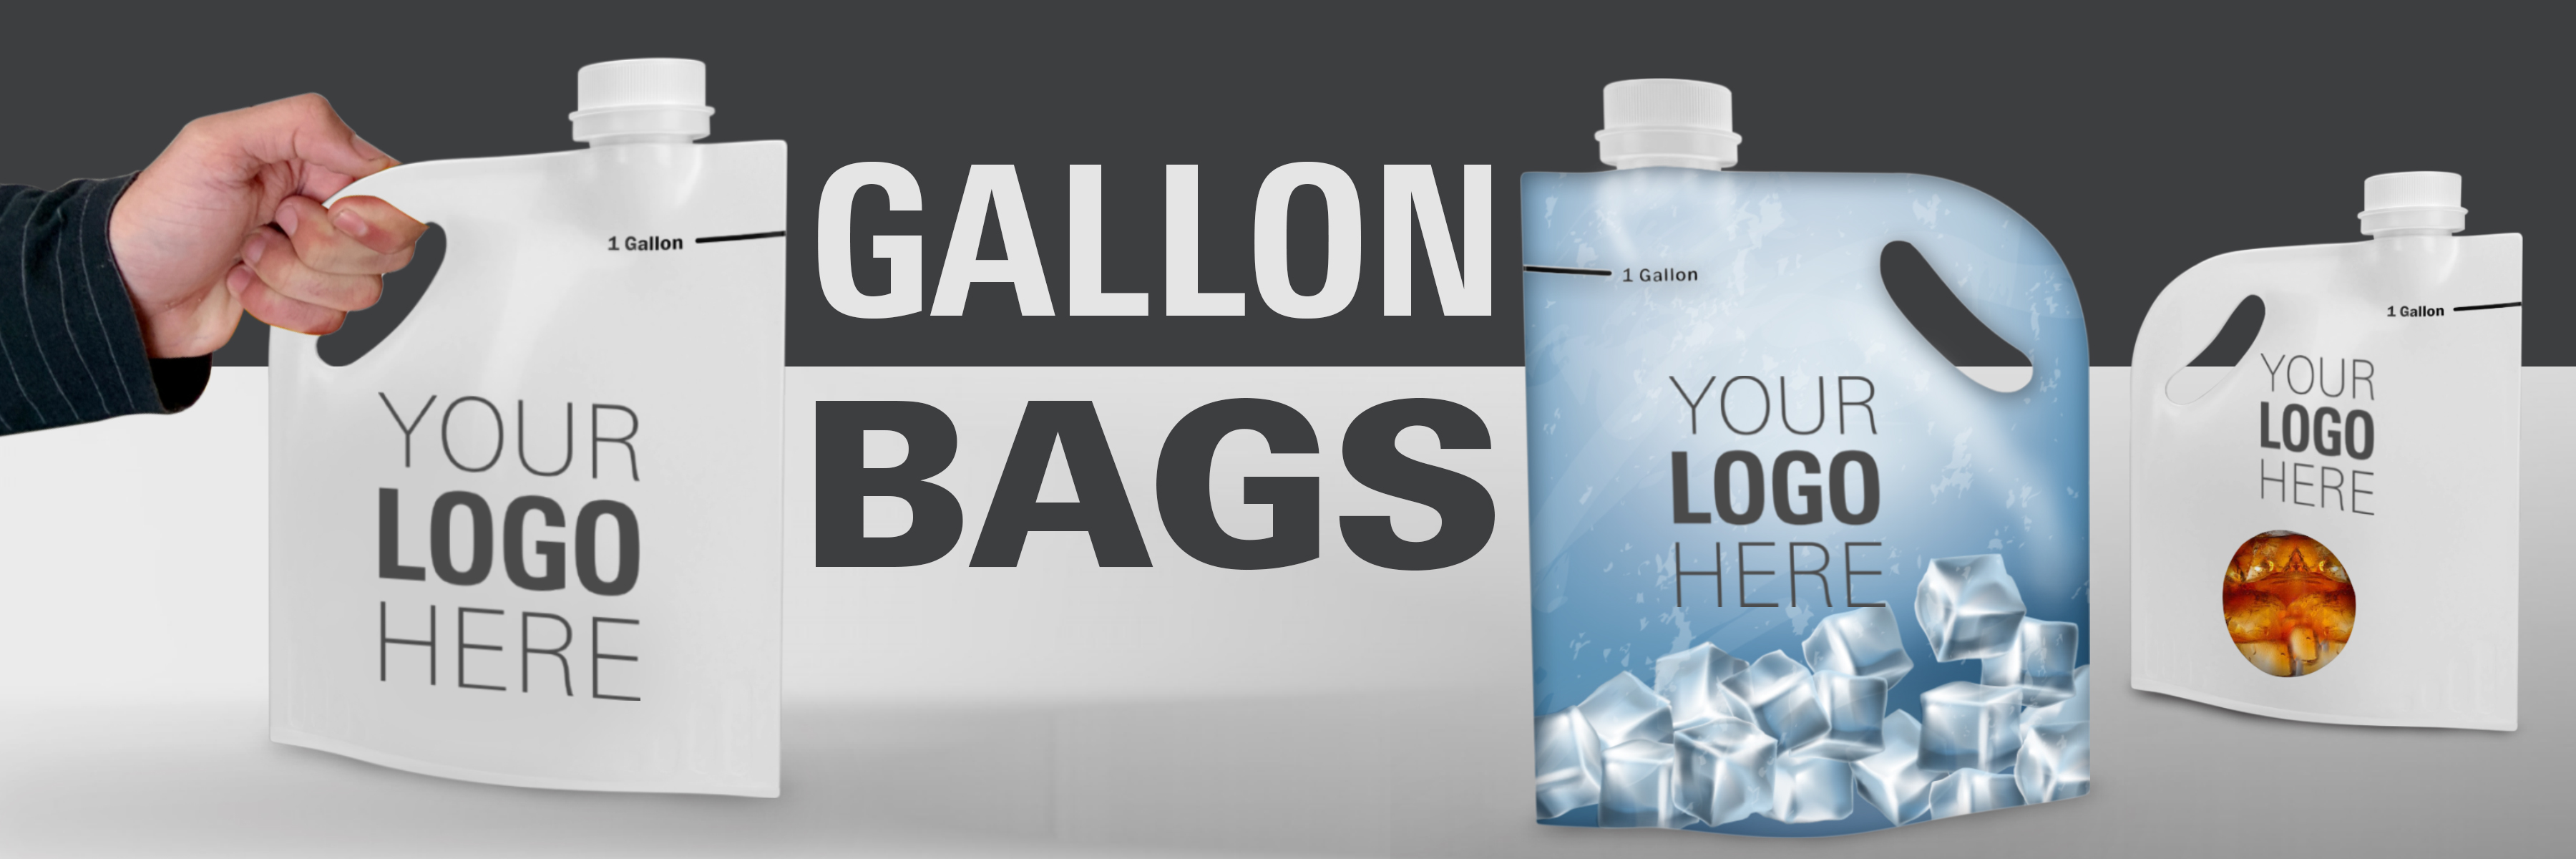 gallon bags